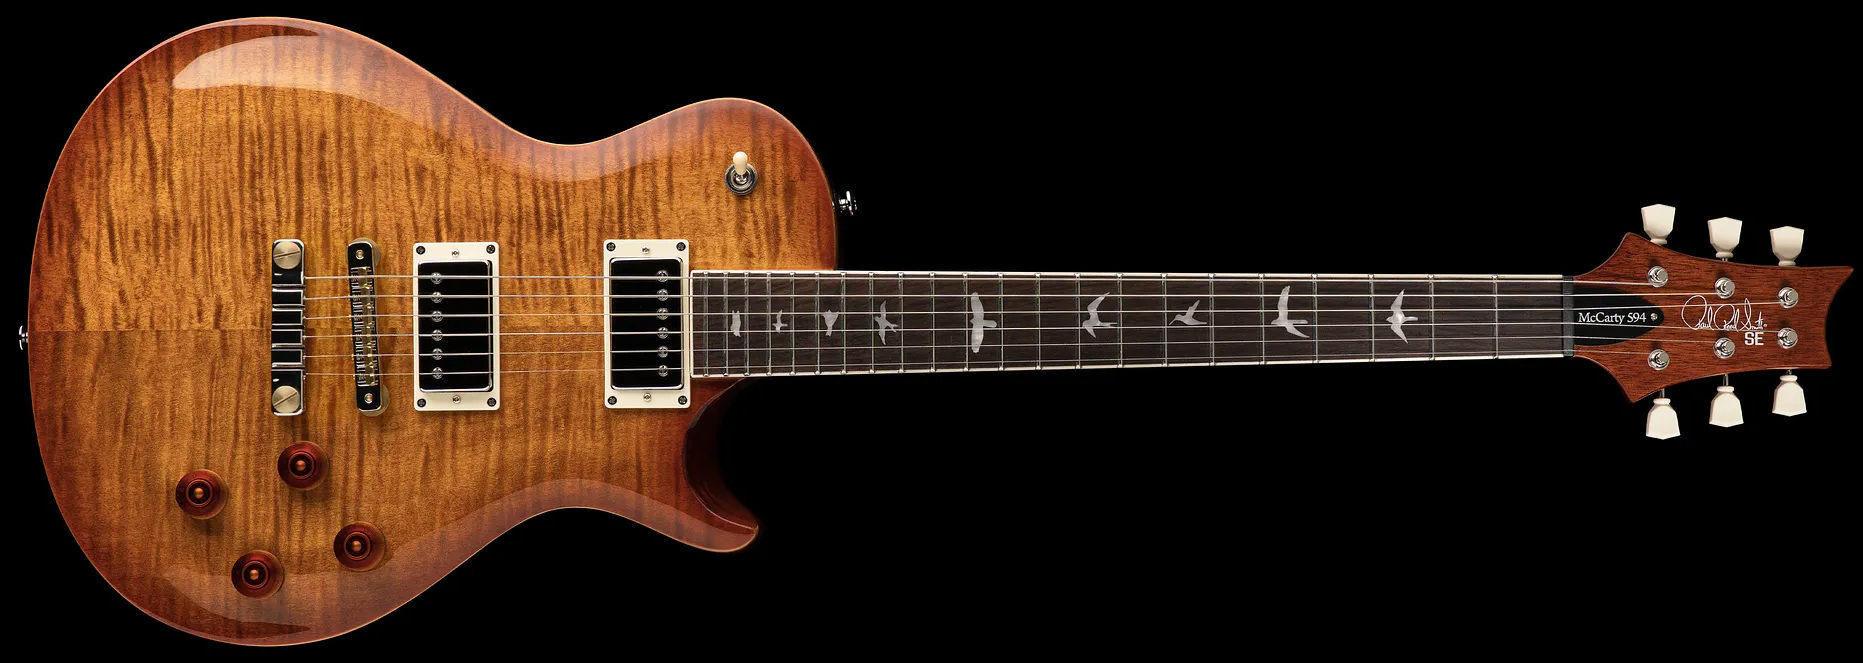 Prs Se Mccarty 594 Singlecut 2h Ht Rw - Vintage Sunburst - Enkel gesneden elektrische gitaar - Variation 2